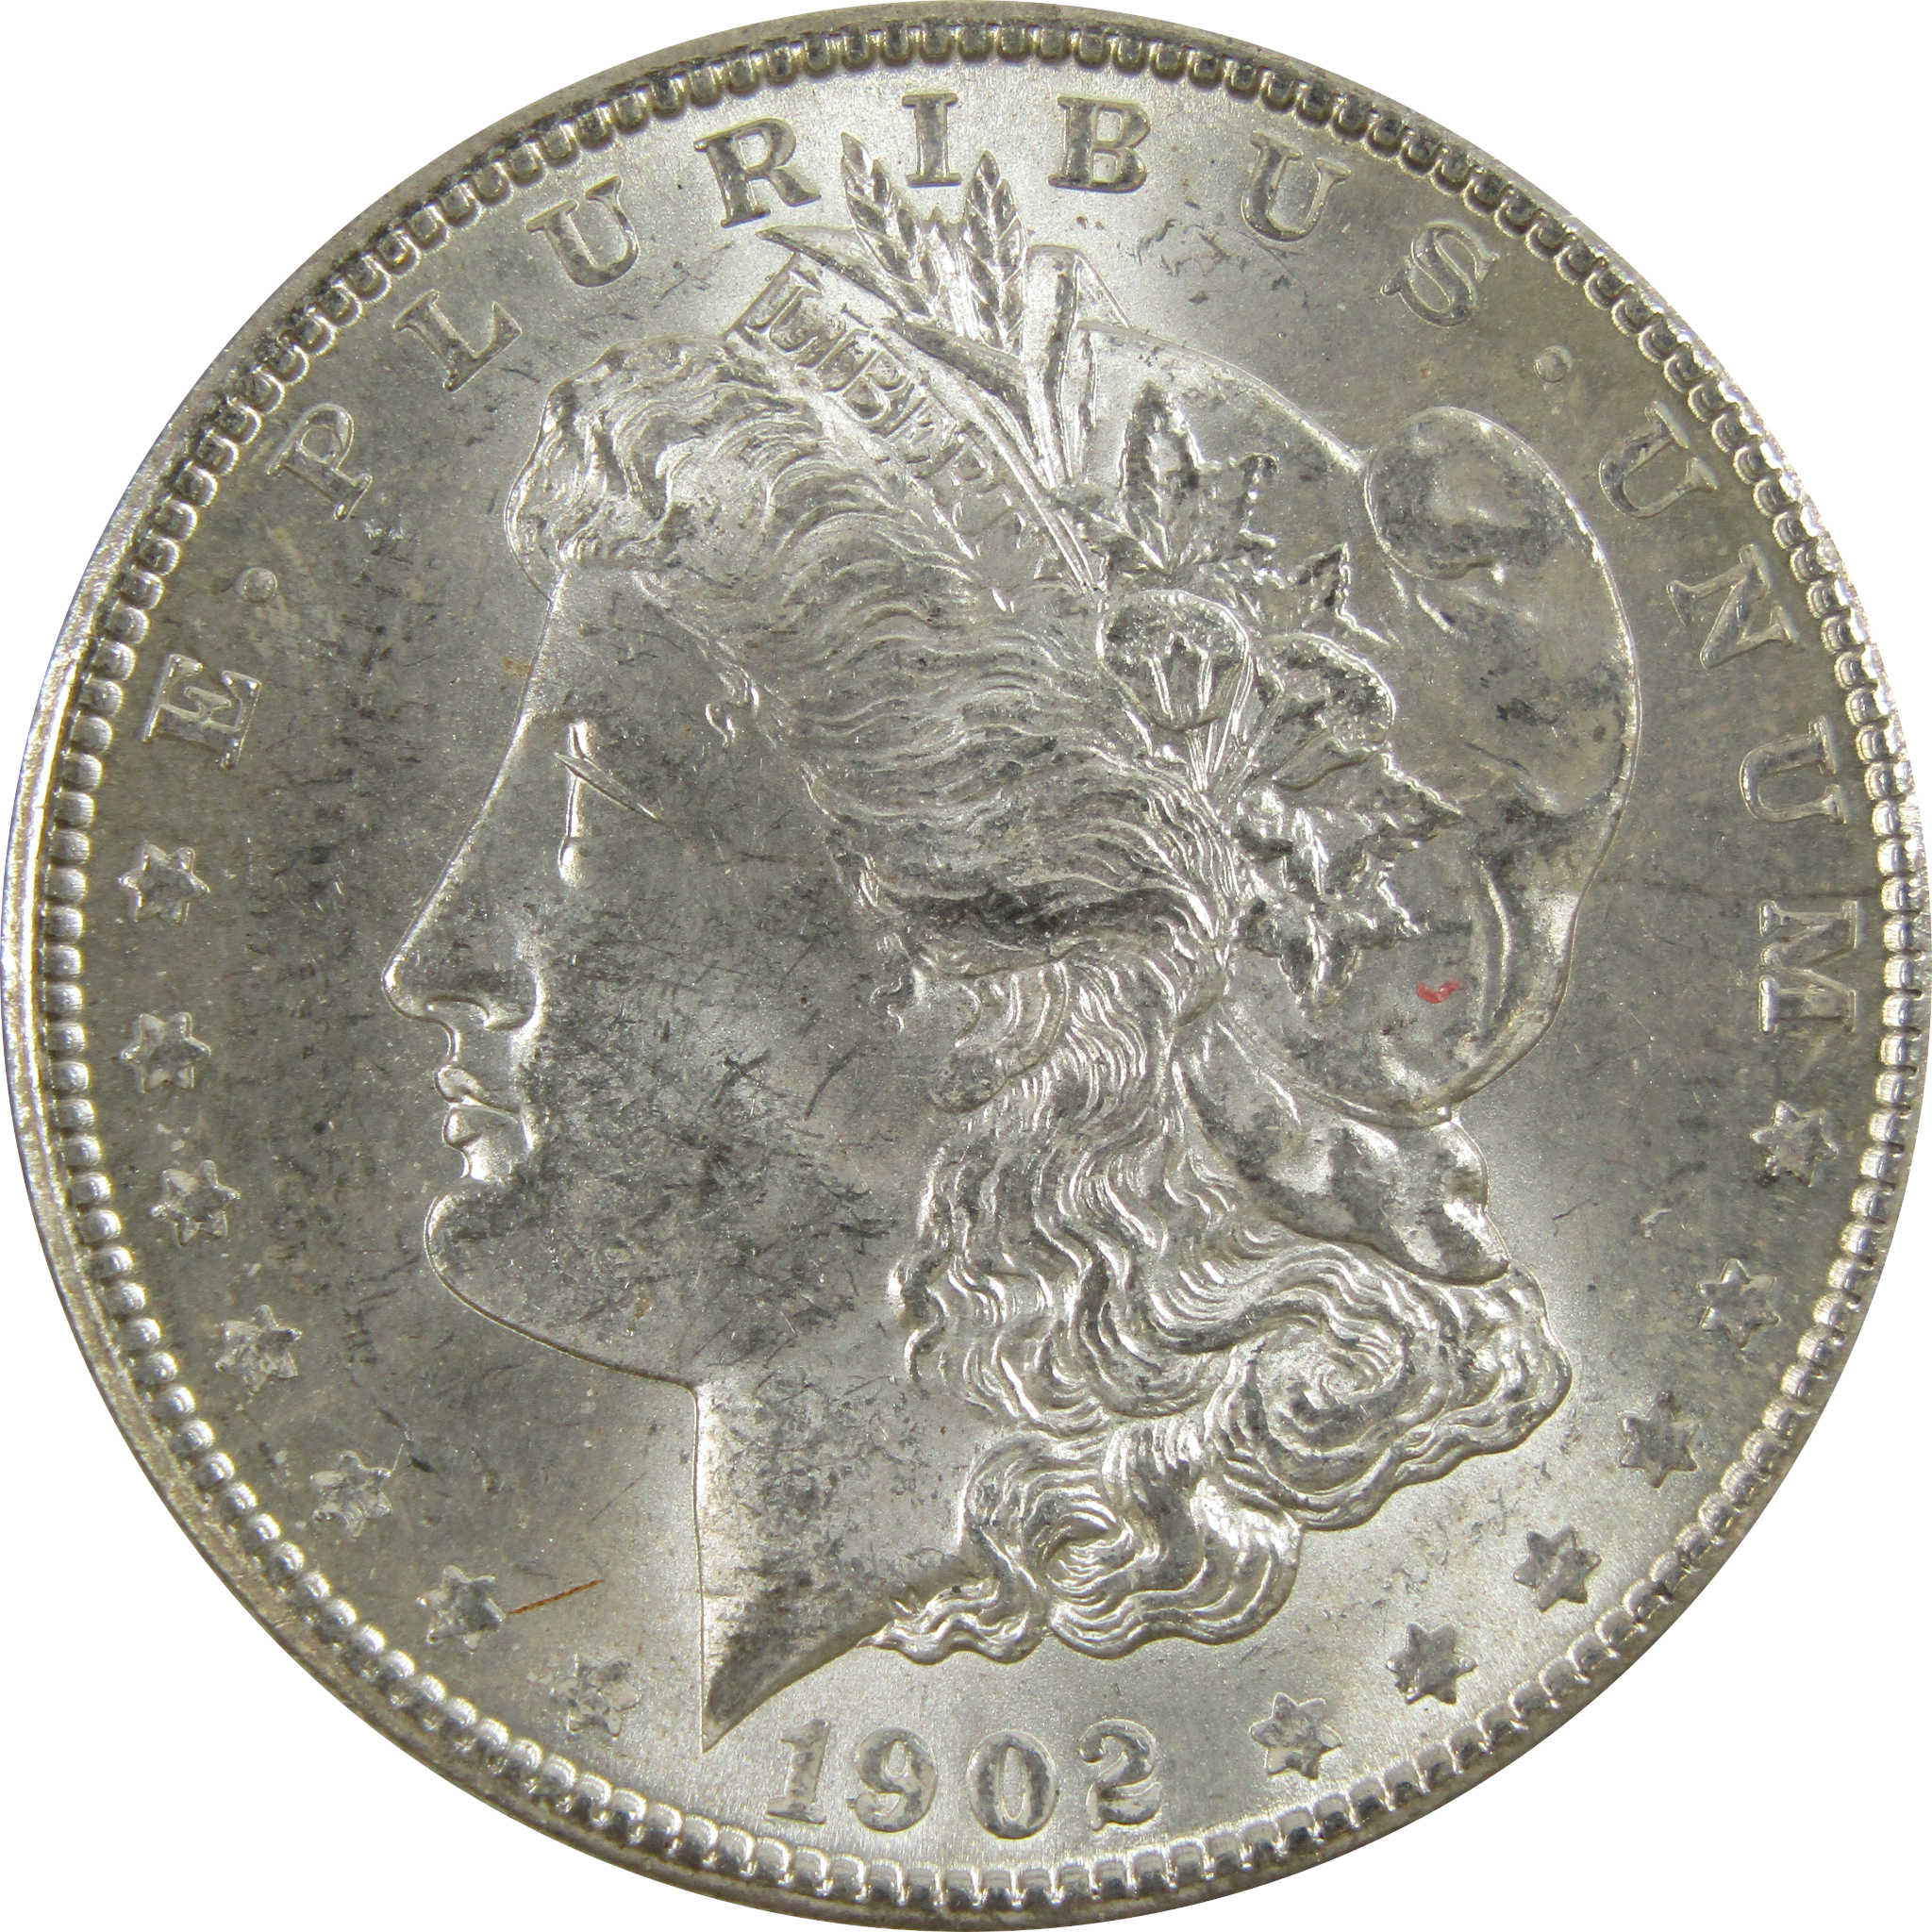 1902 O Morgan Dollar BU Uncirculated 90% Silver $1 Coin SKU:I5210 - Morgan coin - Morgan silver dollar - Morgan silver dollar for sale - Profile Coins &amp; Collectibles